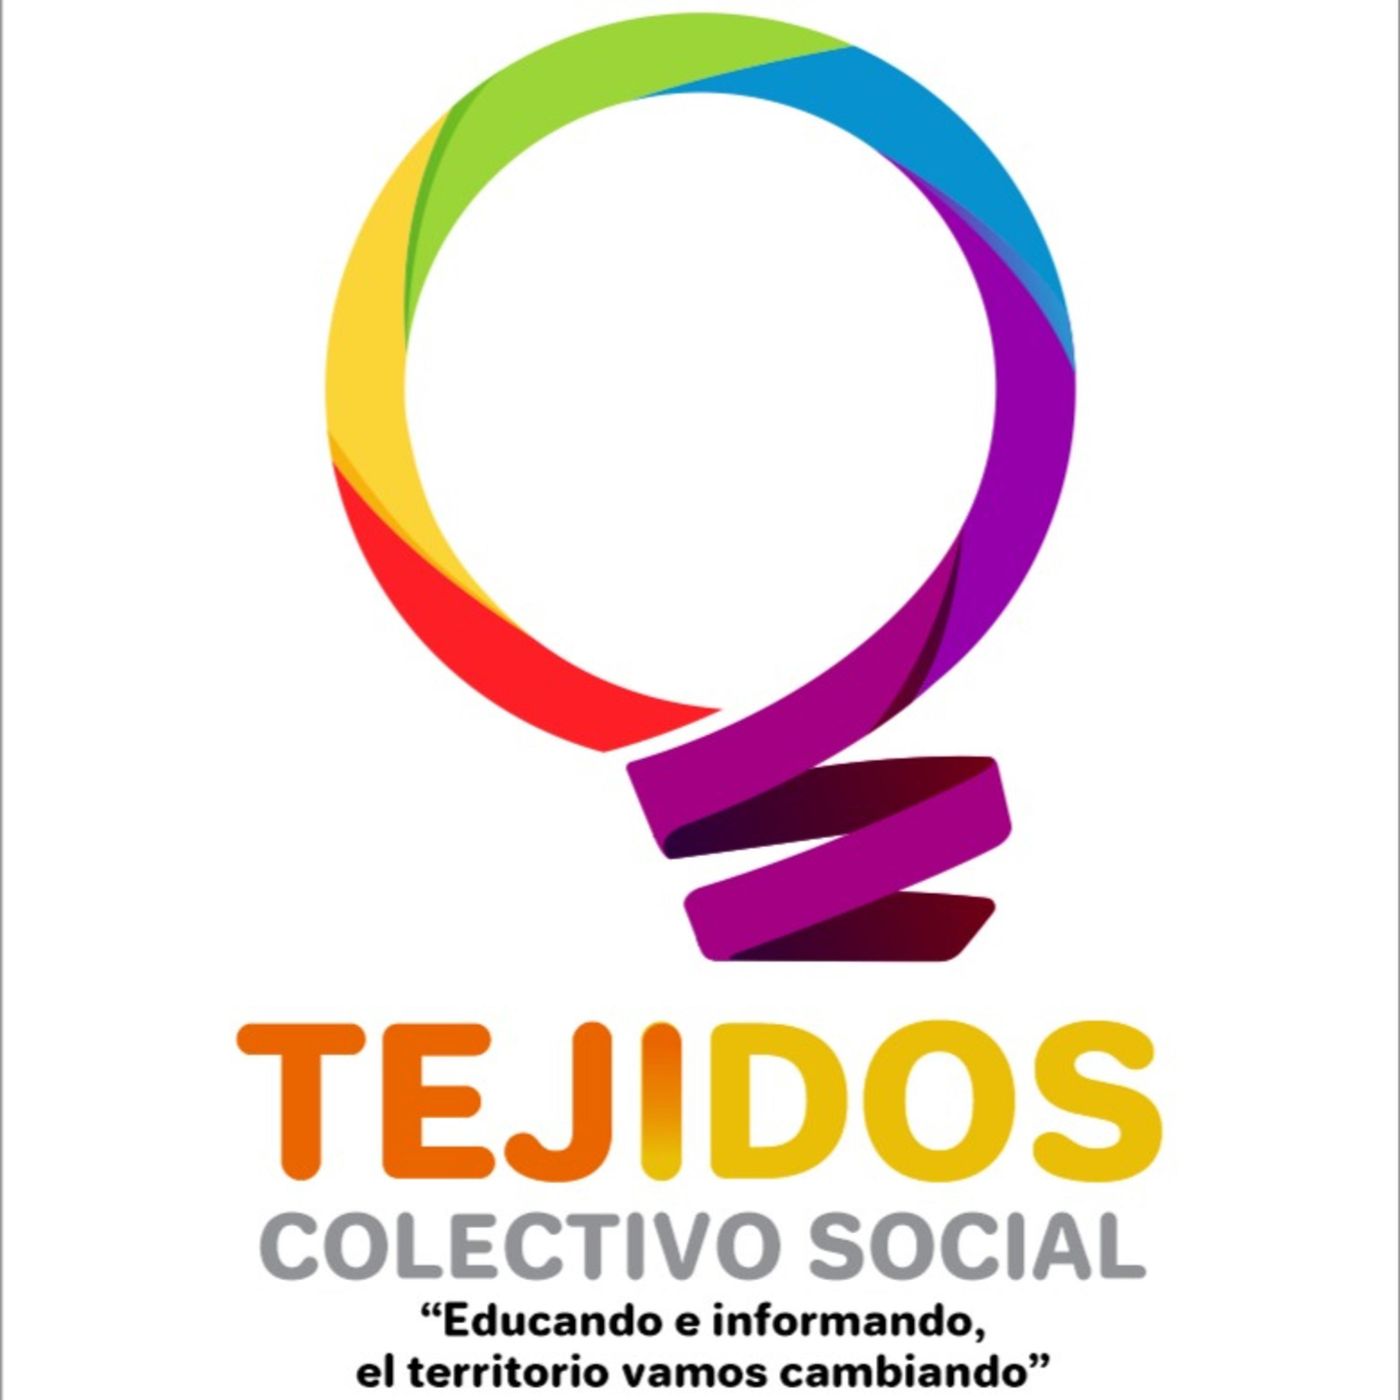 Tejidos - Colectivo Social - LA VOZ DE LOS ARRIEROS